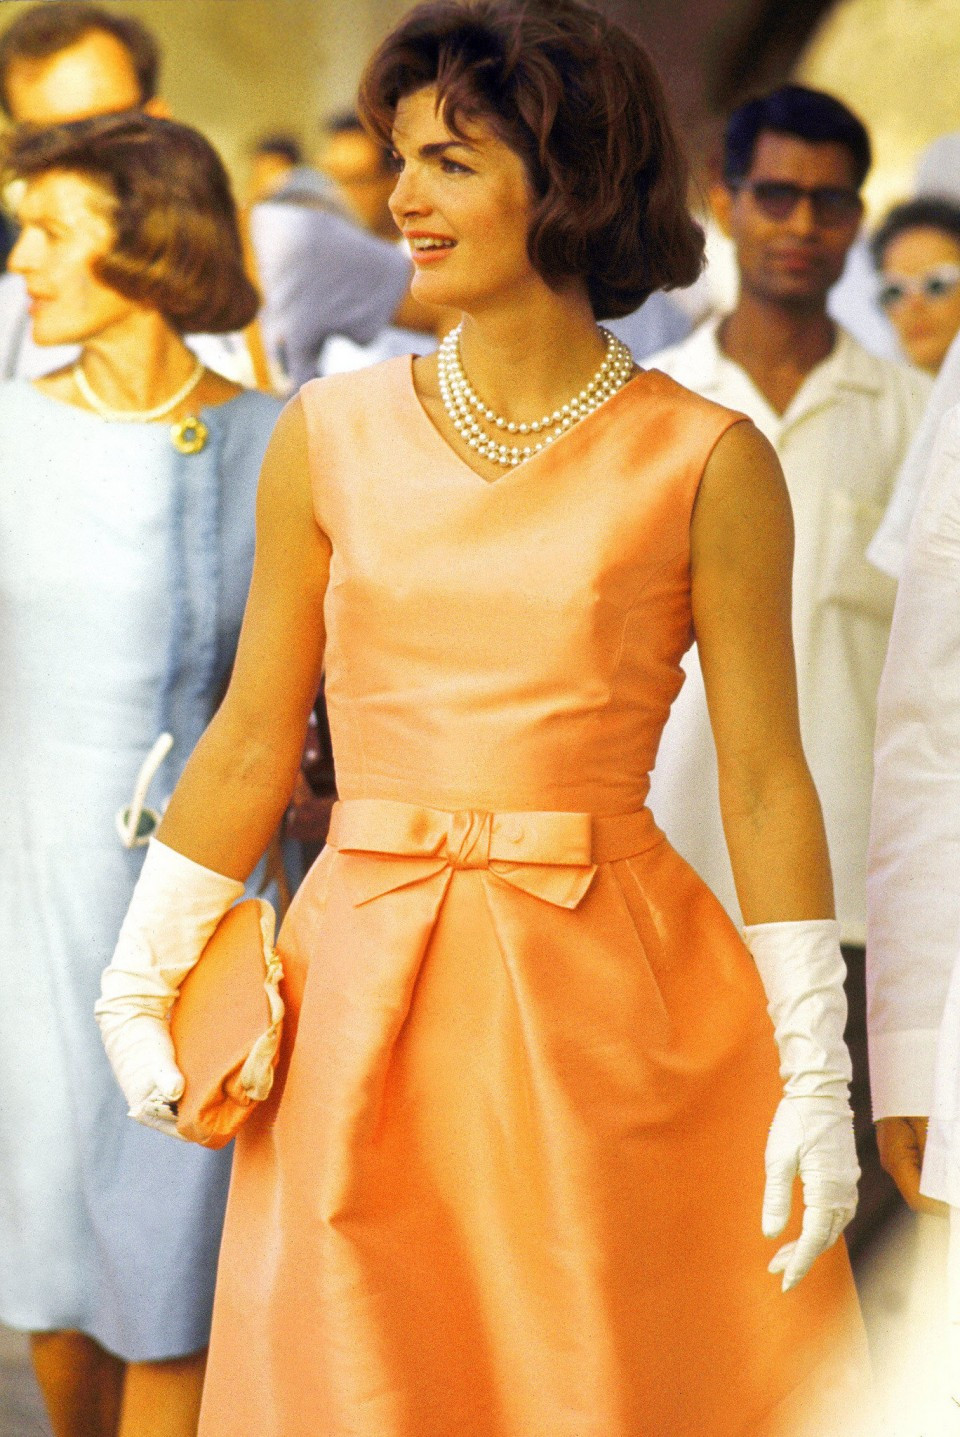 Điểm nhấn dễ nhận thấy ở phong cách thời trang của phu nhân Jackie Kennedy chính là những đôi găng tay màu trắng và kiểu túi cầm tay cổ điển. Bà luôn sáng tạo phối hợp những phụ kiện này với nhau tùy theo tính chất từng sự kiện. (Ảnh: ELLE)